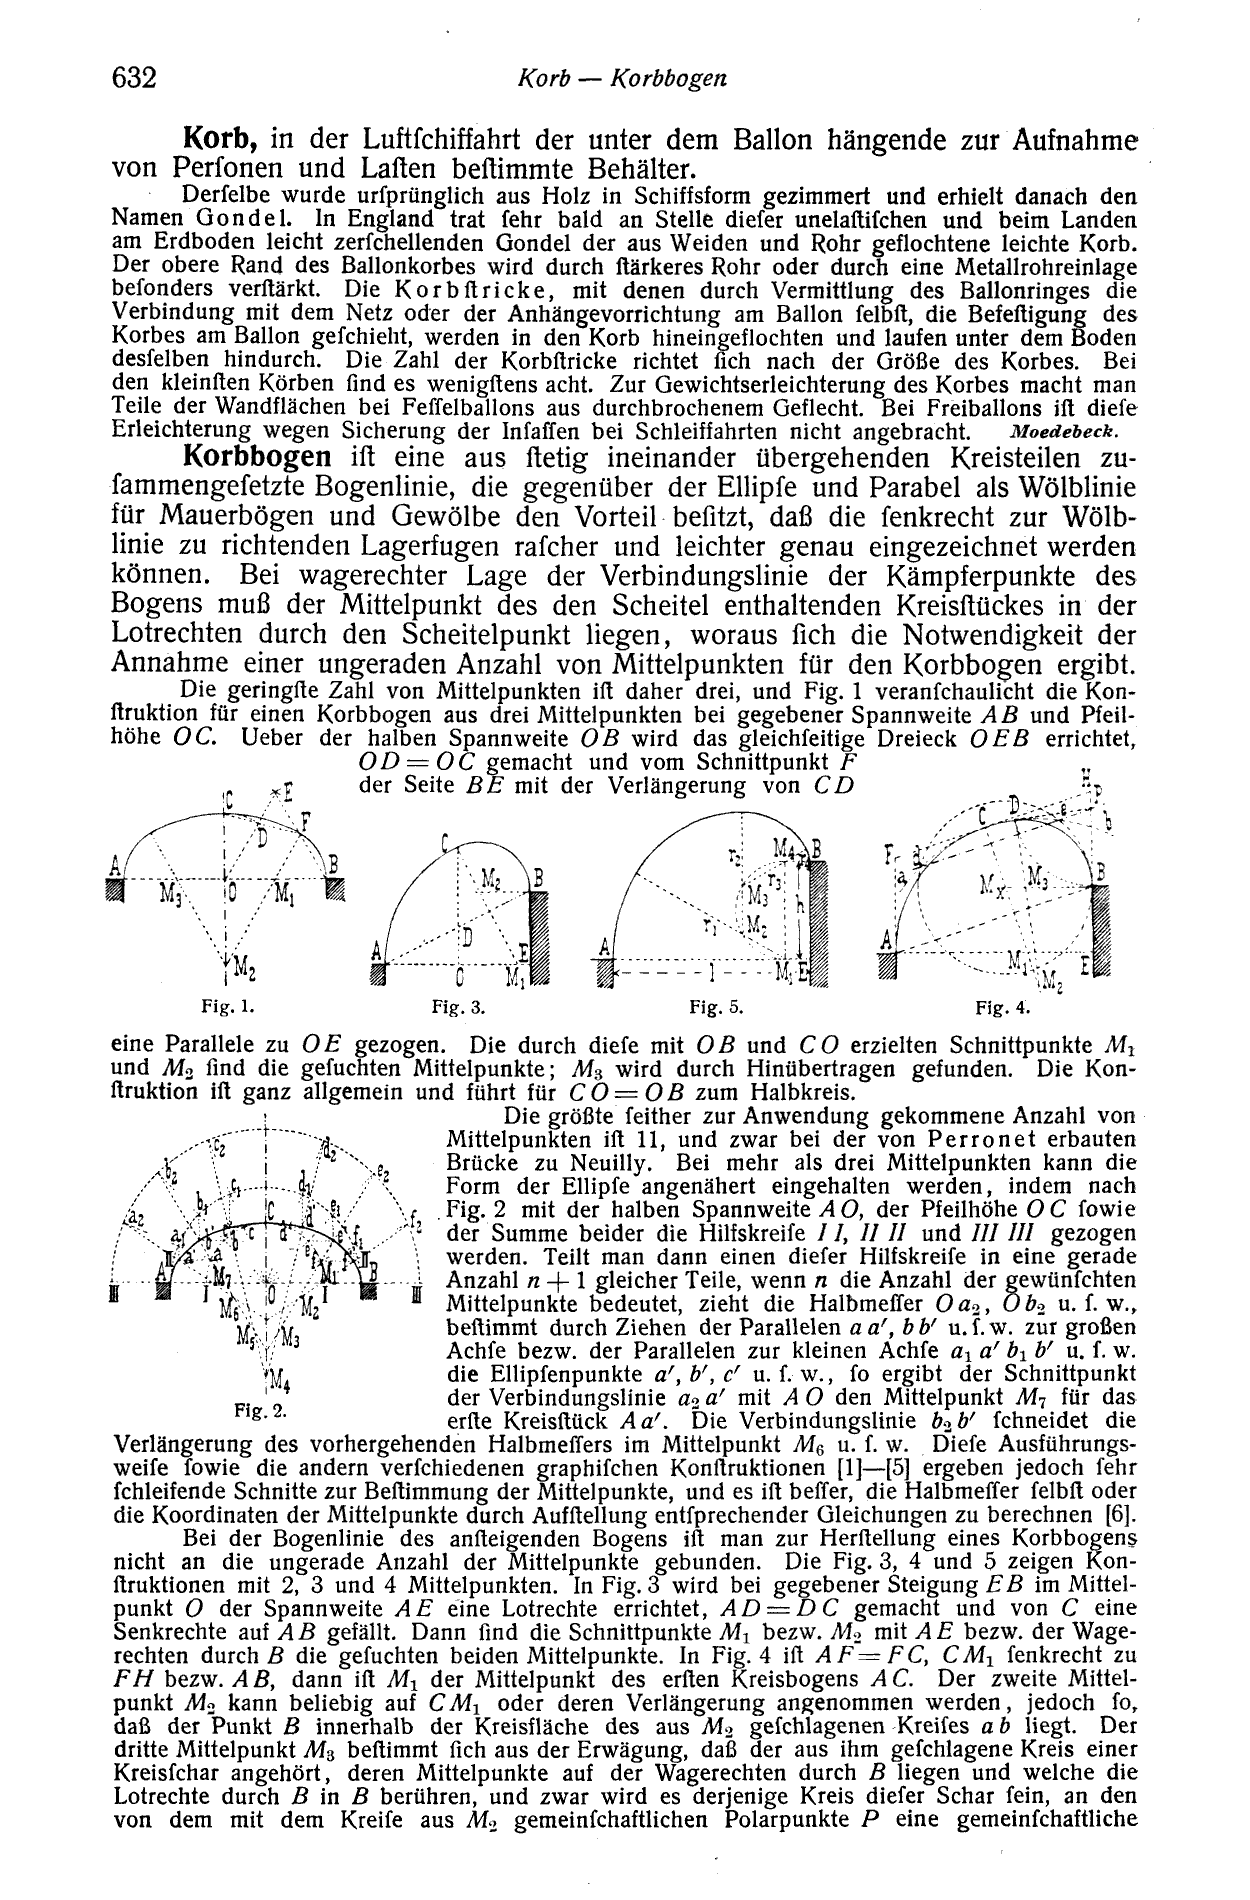 Lueger, Otto: Lexikon der gesamten Technik und ihrer Hilfswissenschaften, Bd. 5 Stuttgart, Leipzig 1907. S. 632